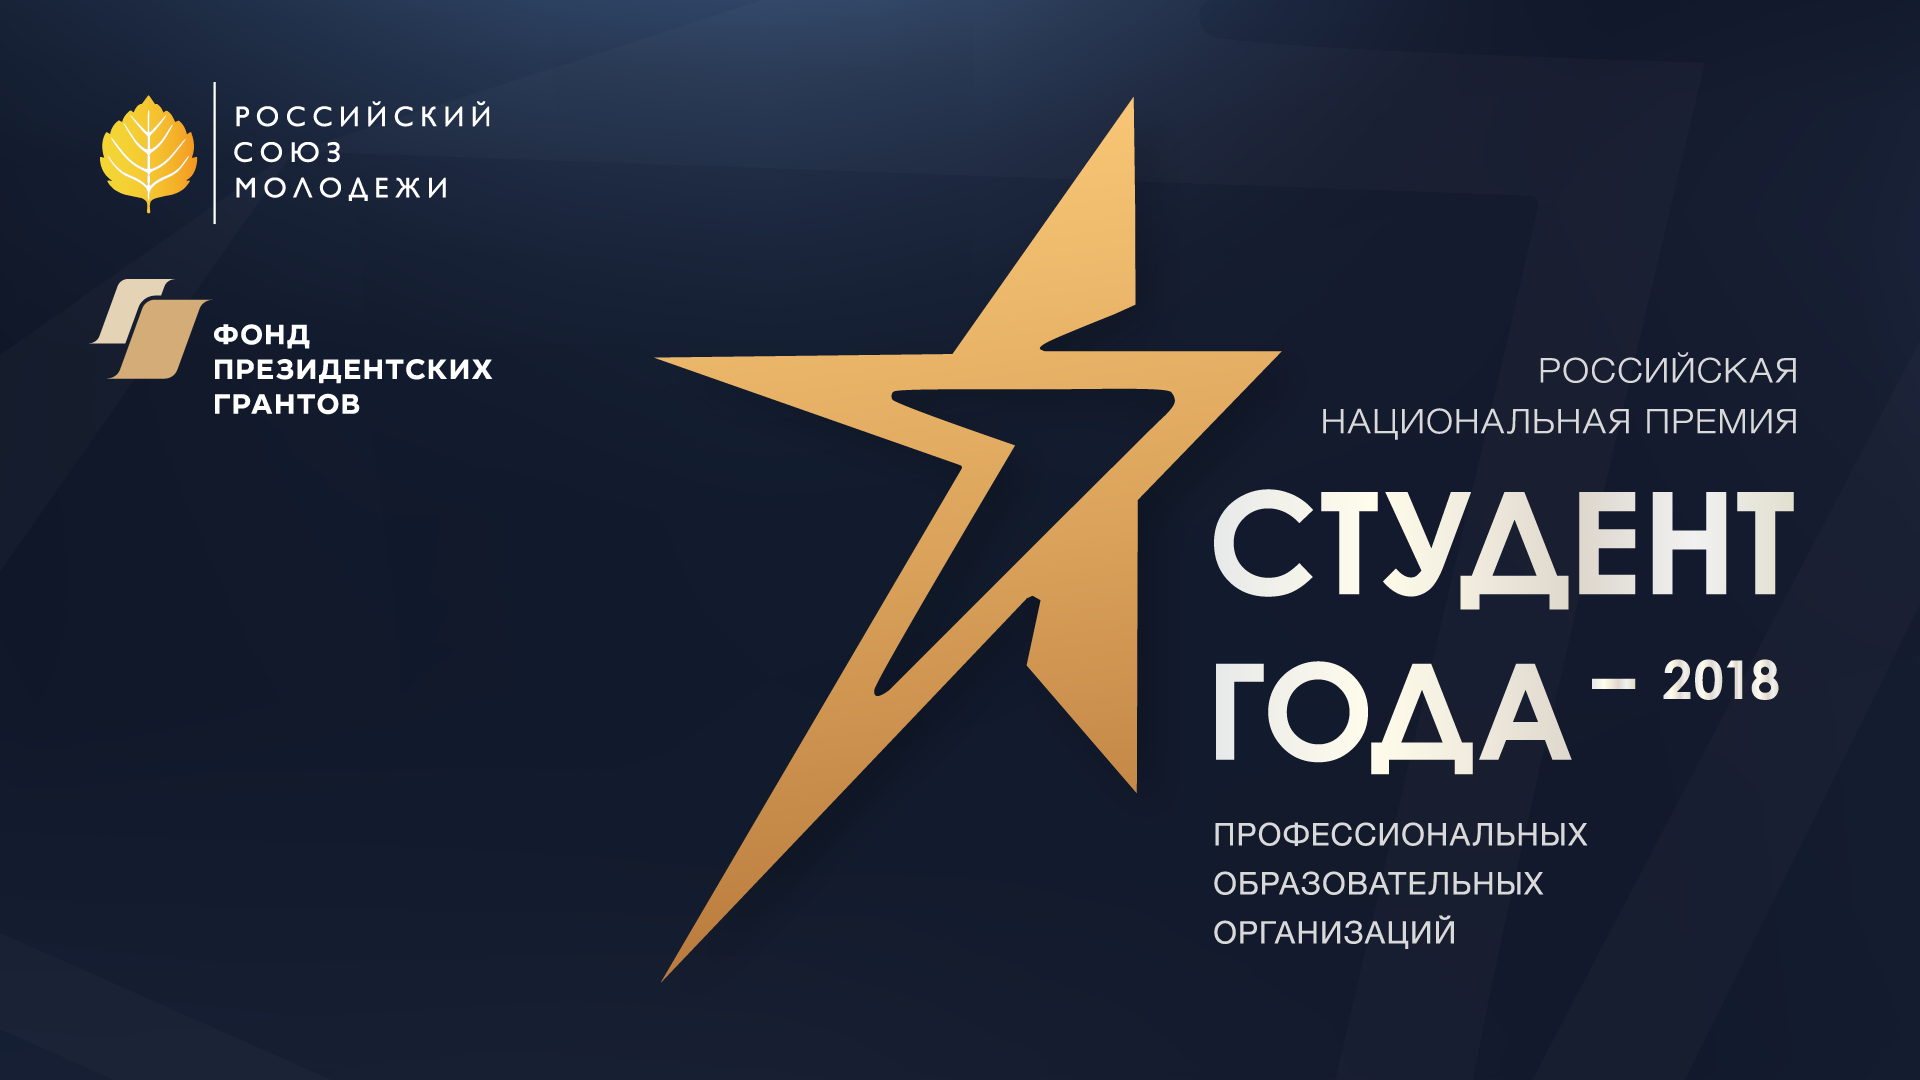 Российская национальная премия «Студент года – 2018» профессиональных образовательных организаций. Астрахань ждёт!